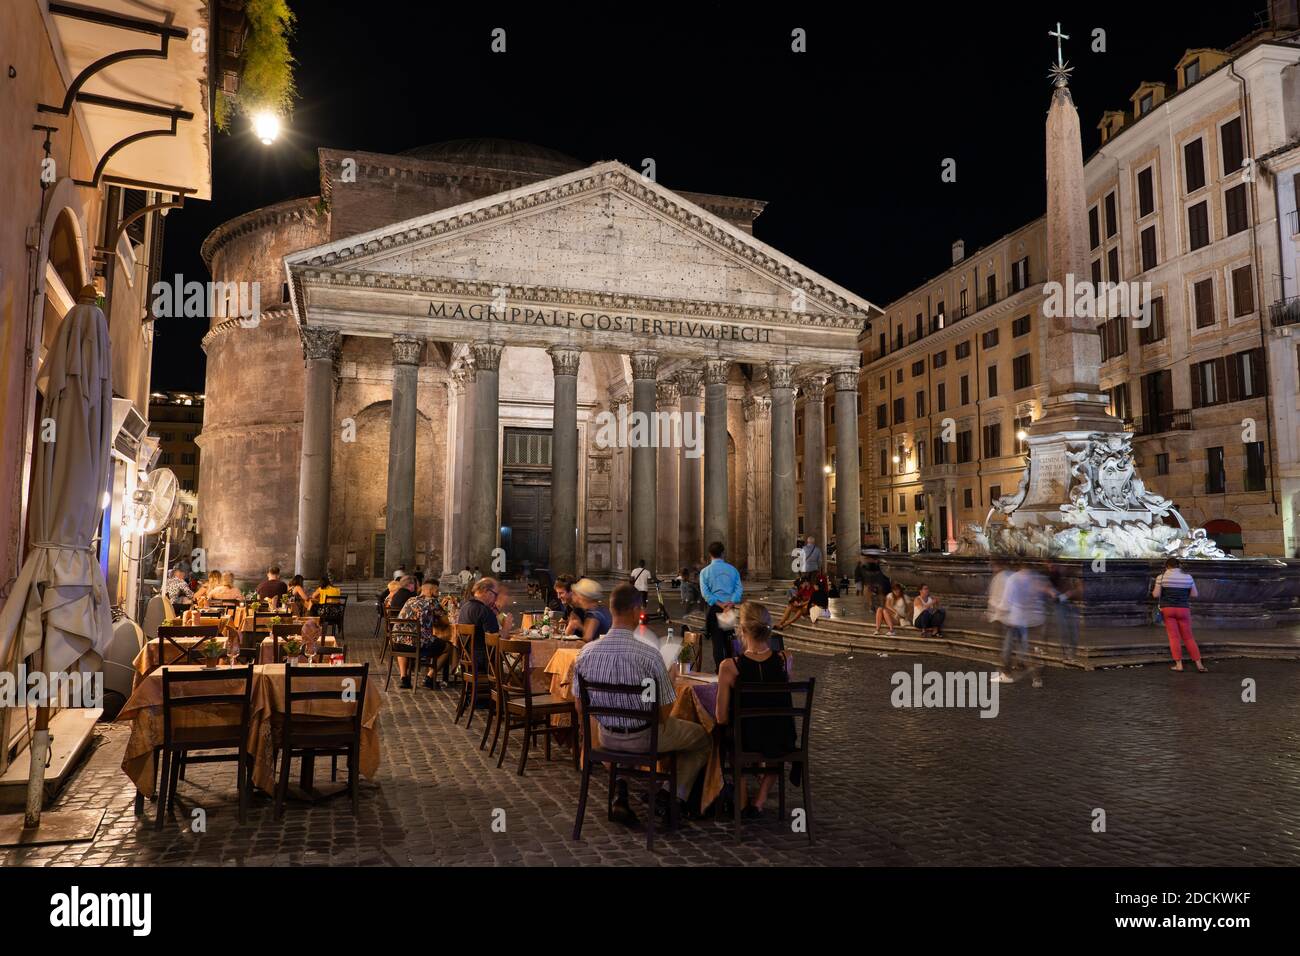 Ville de Rome la nuit en Italie, le Panthéon ancien temple romain vu de la place Piazza della Rotonda avec des tables de café, une fontaine et l'ancien Egyp Banque D'Images